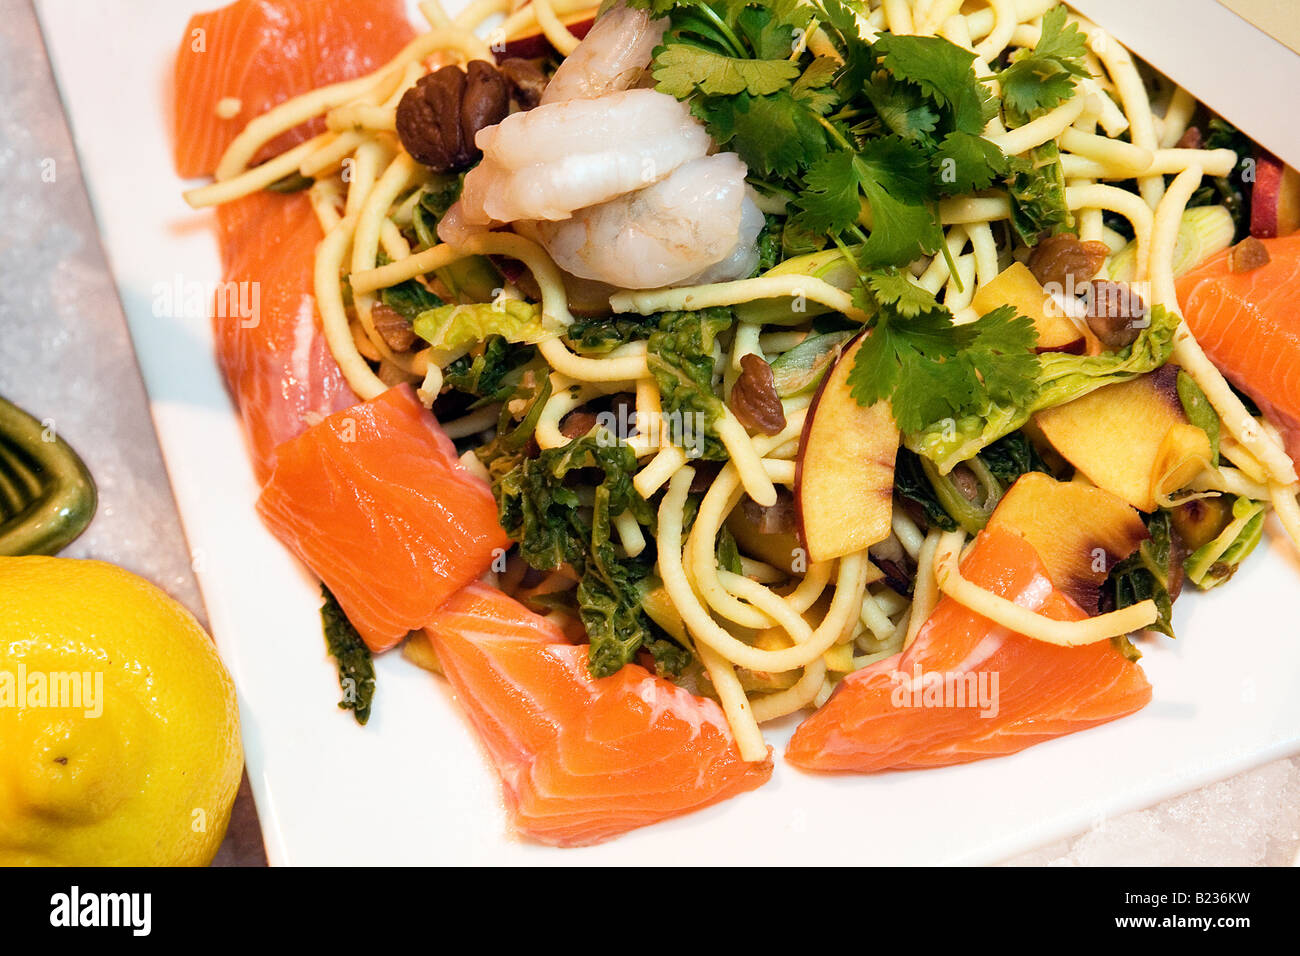 Bereit Wok-Gericht von gehackten Lachs Fisch Filets mit Spätzle (Spätzle) Kastanie und Nektarinen. Stockfoto